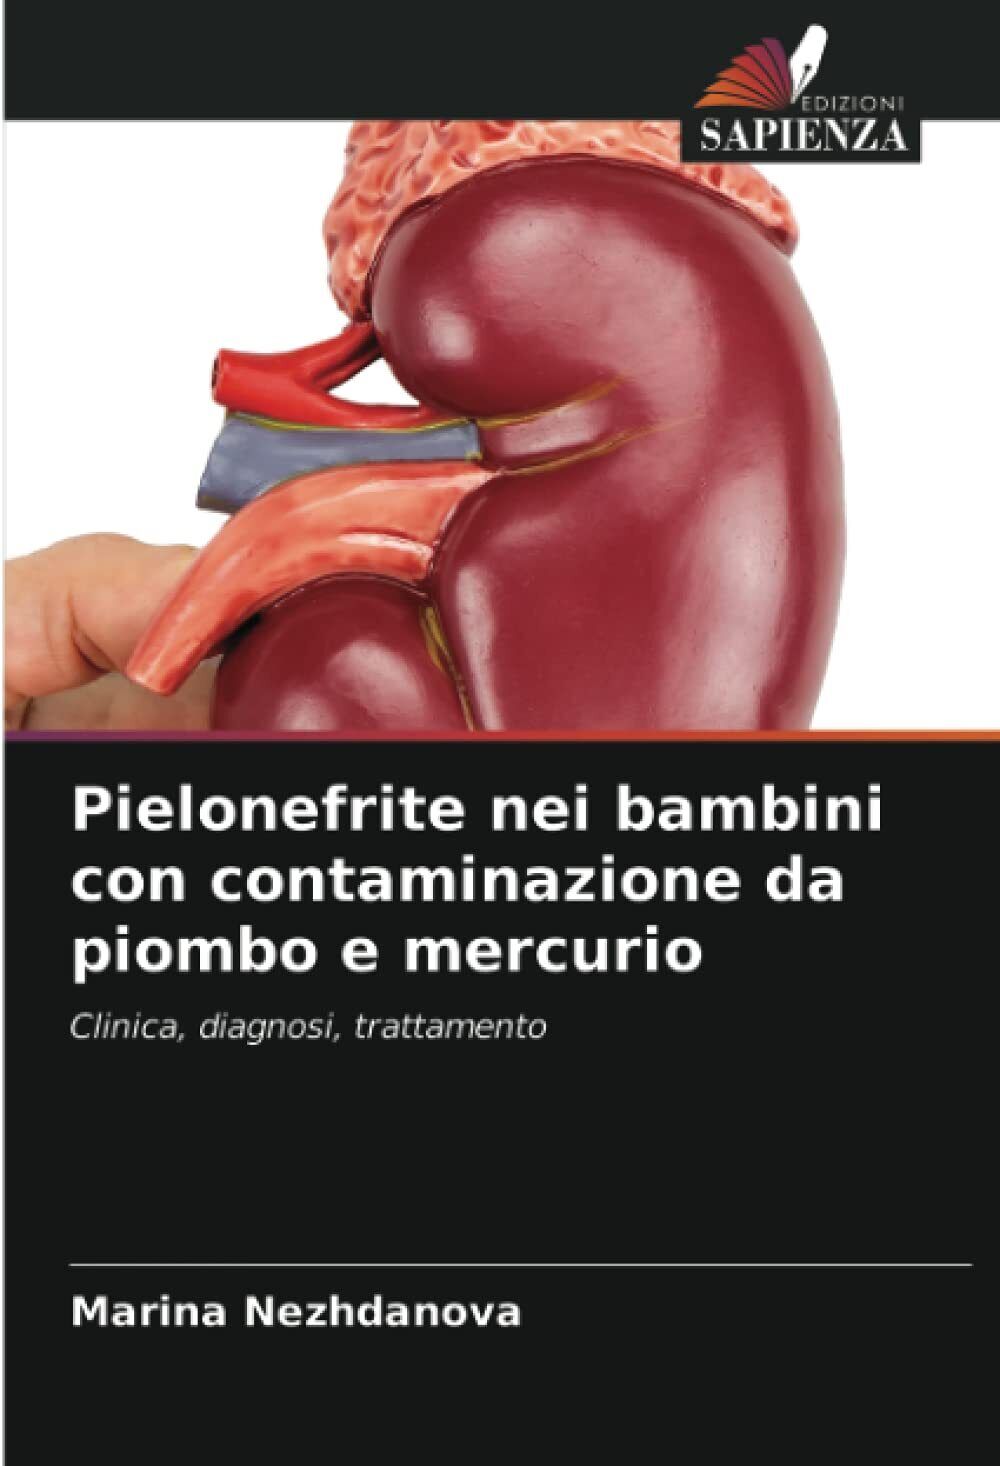 Pielonefrite nei bambini con contaminazione da piombo e mercurio - Sapienza,2021